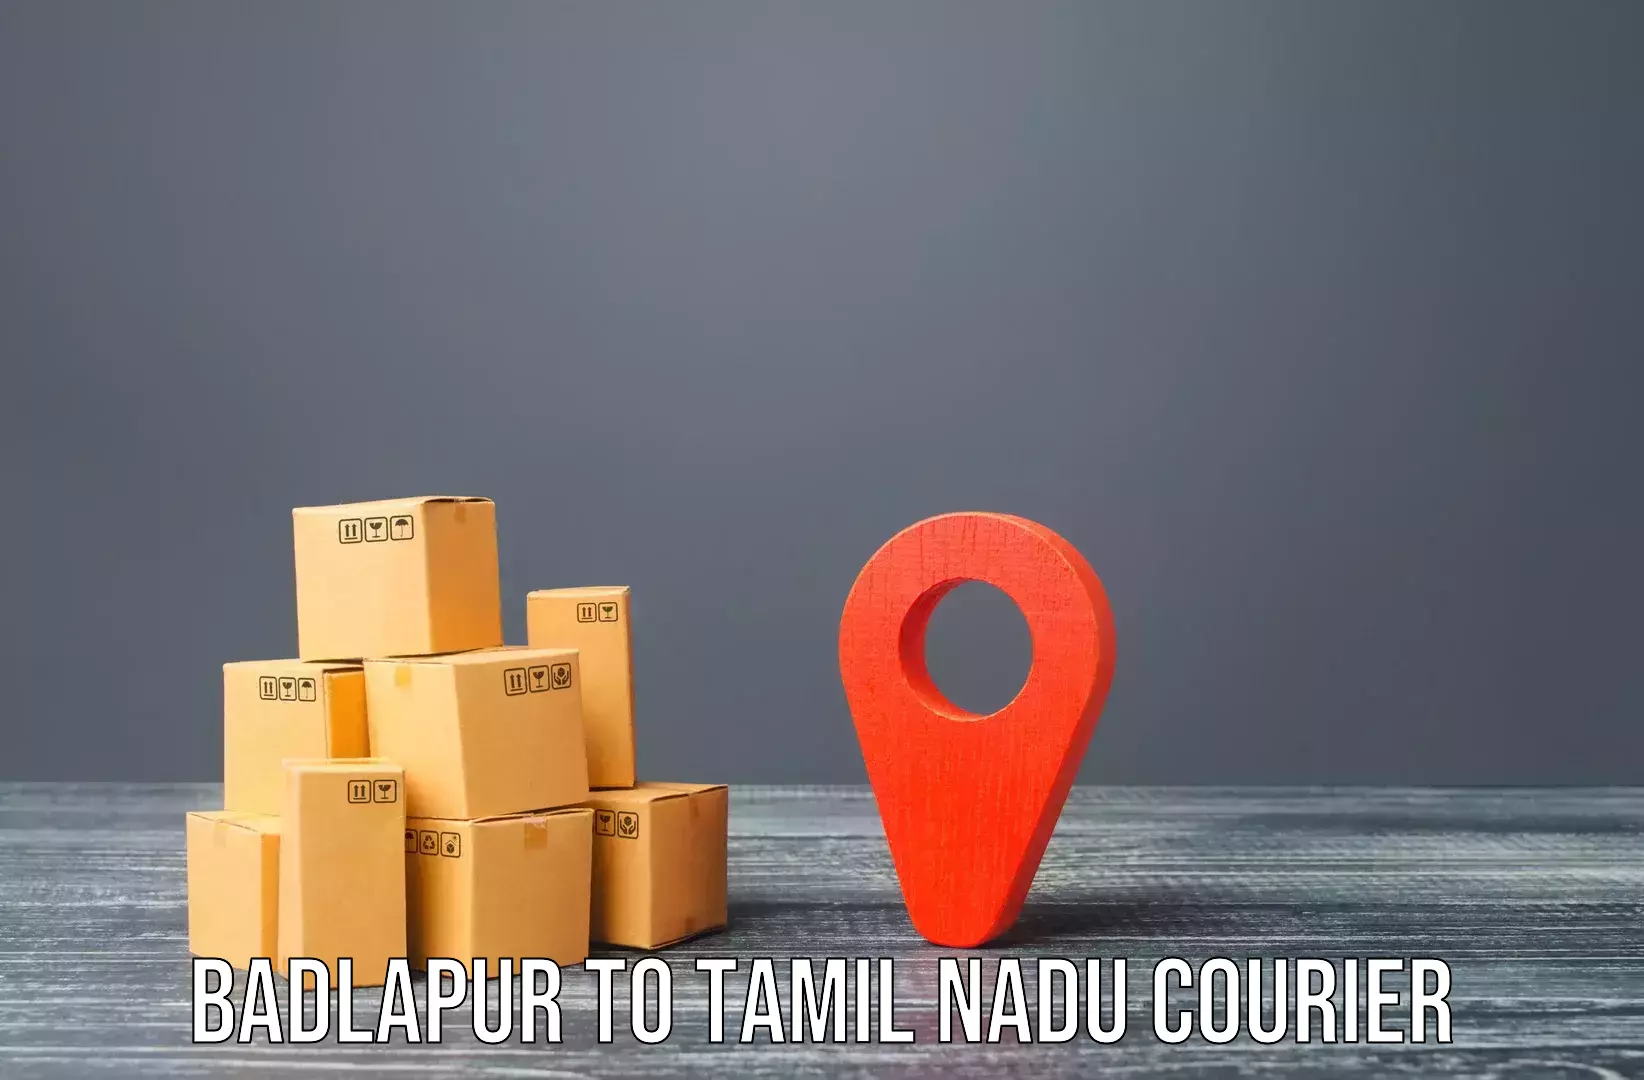 Quality relocation assistance Badlapur to Thiruvadanai